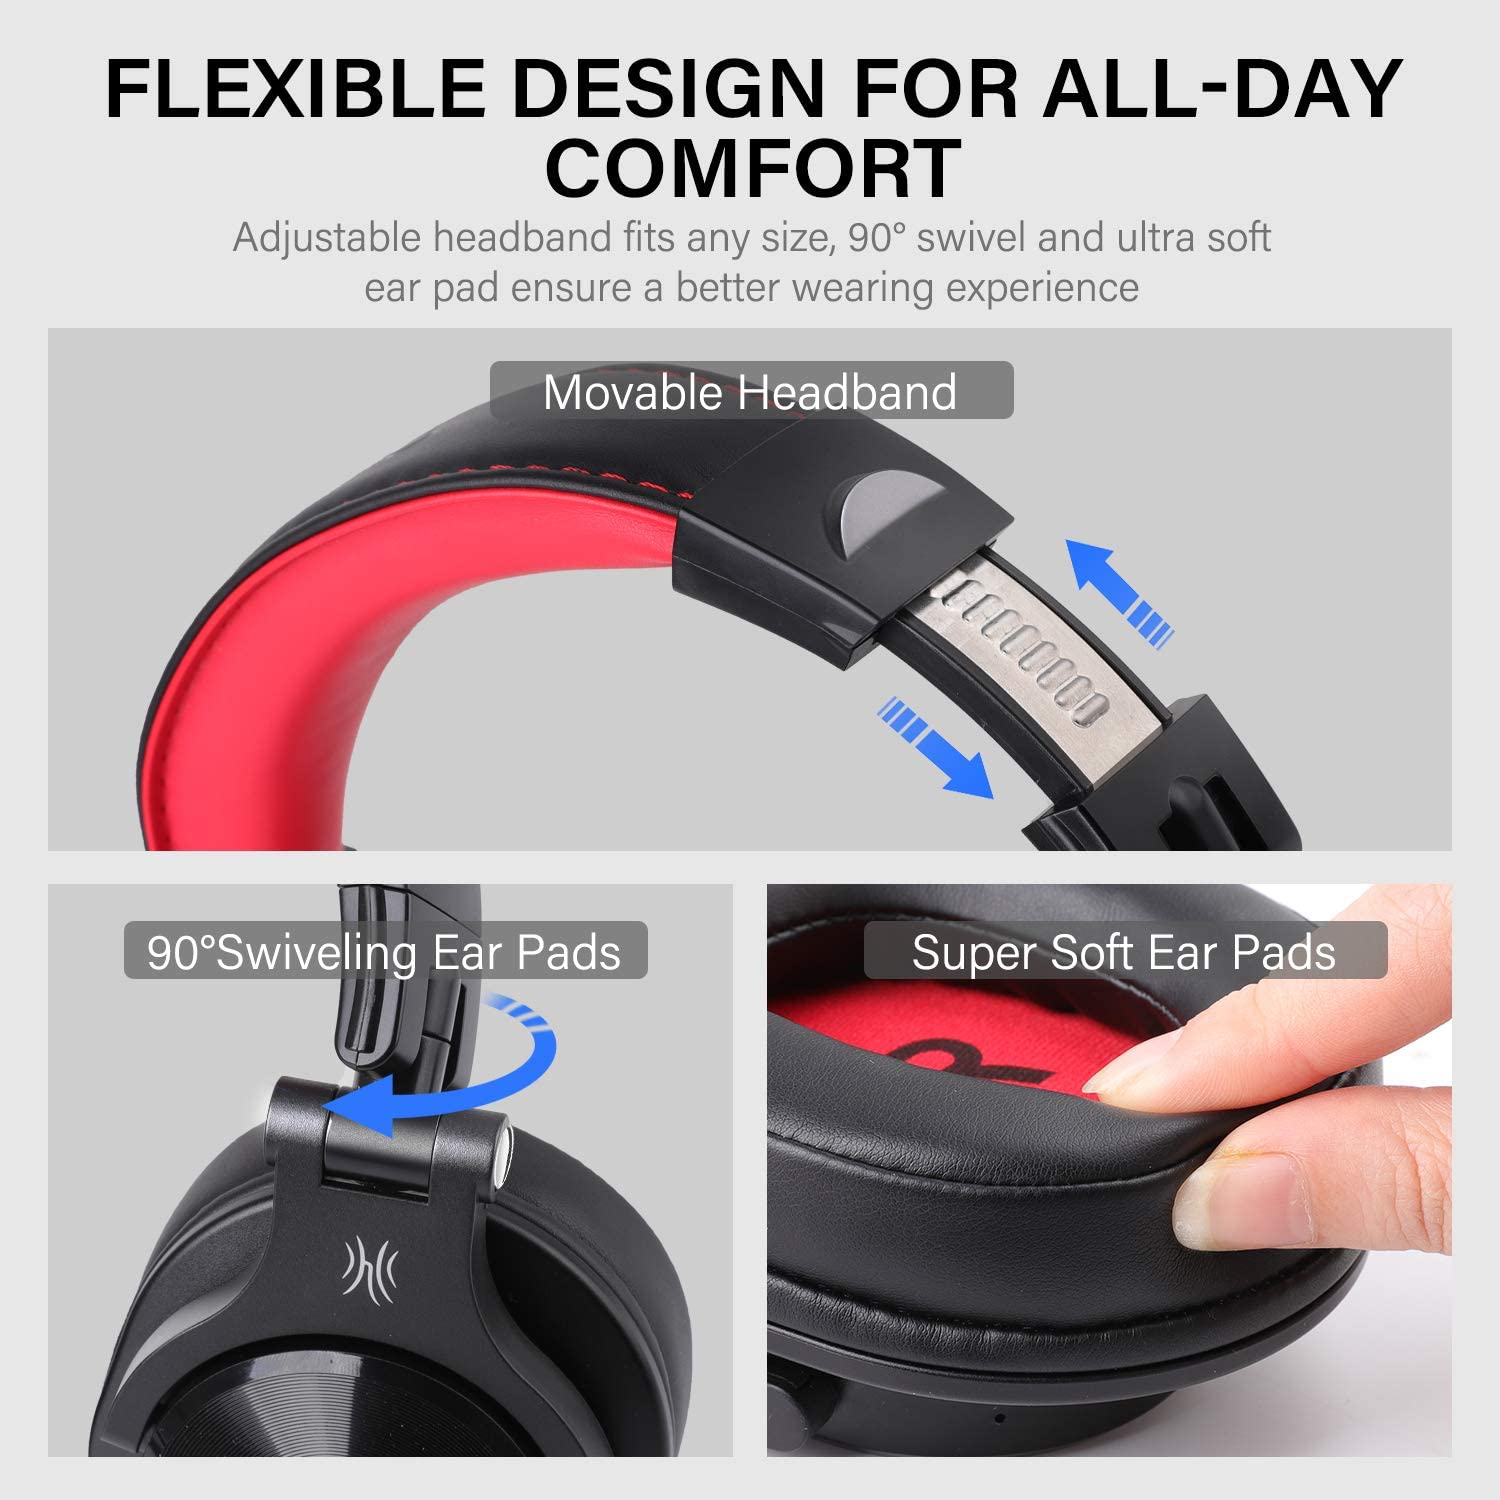 A70 Bluetooth- und kabelgebundene Kopfhörer Super kostengünstig（Rot)